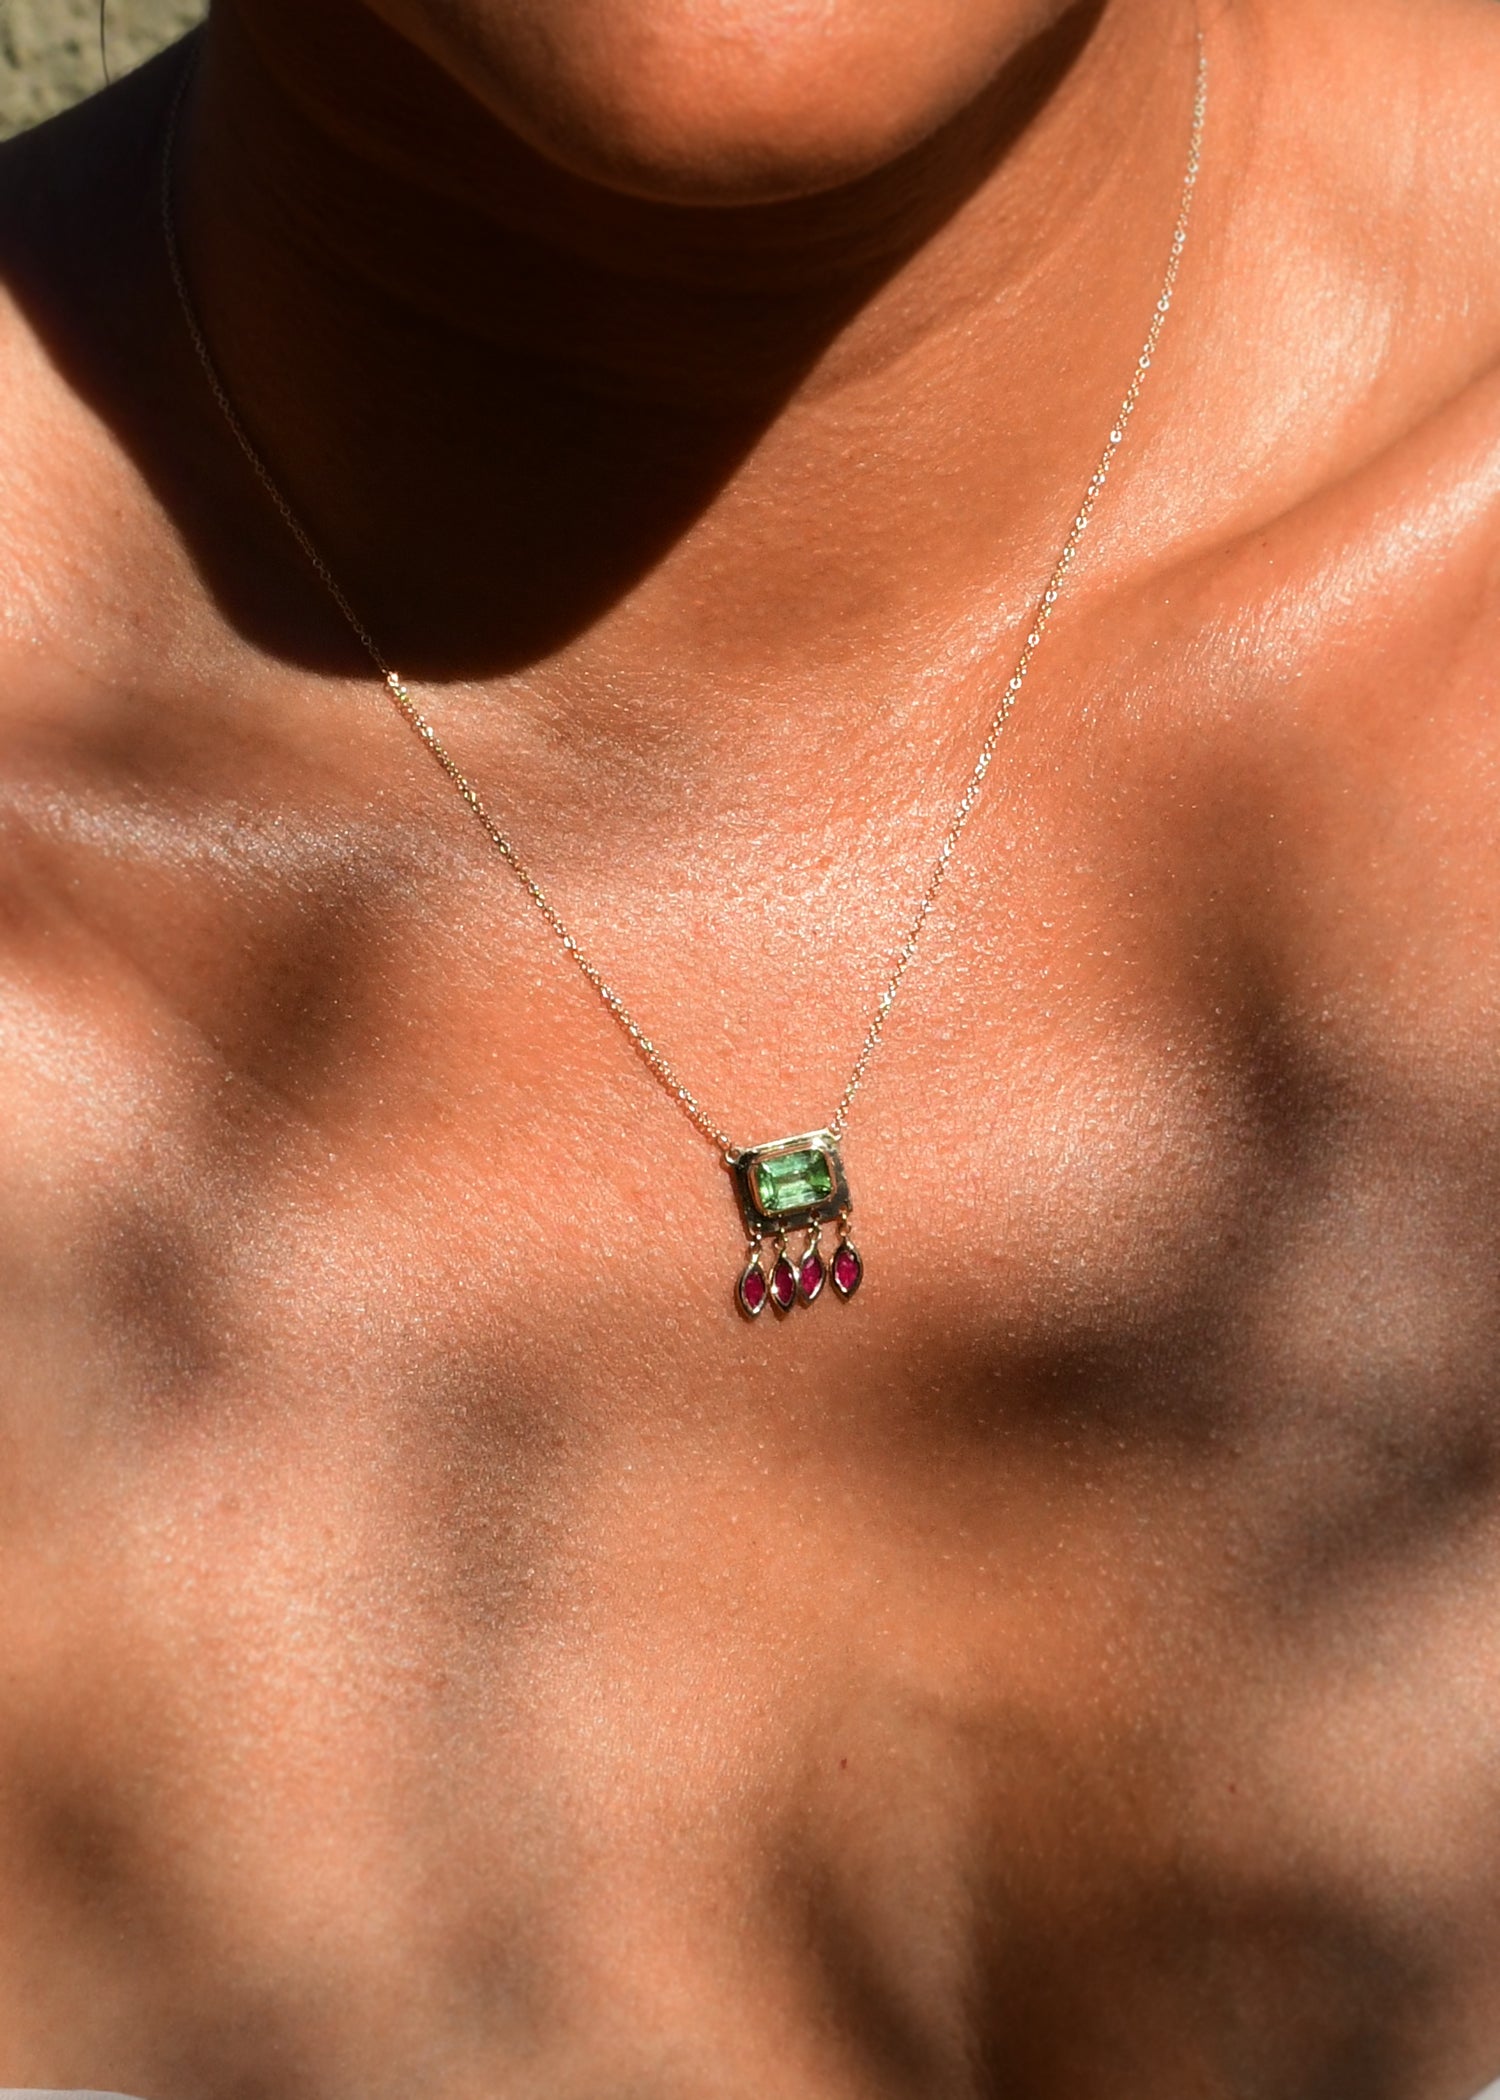 Lumen Necklace in Green Tourmaline